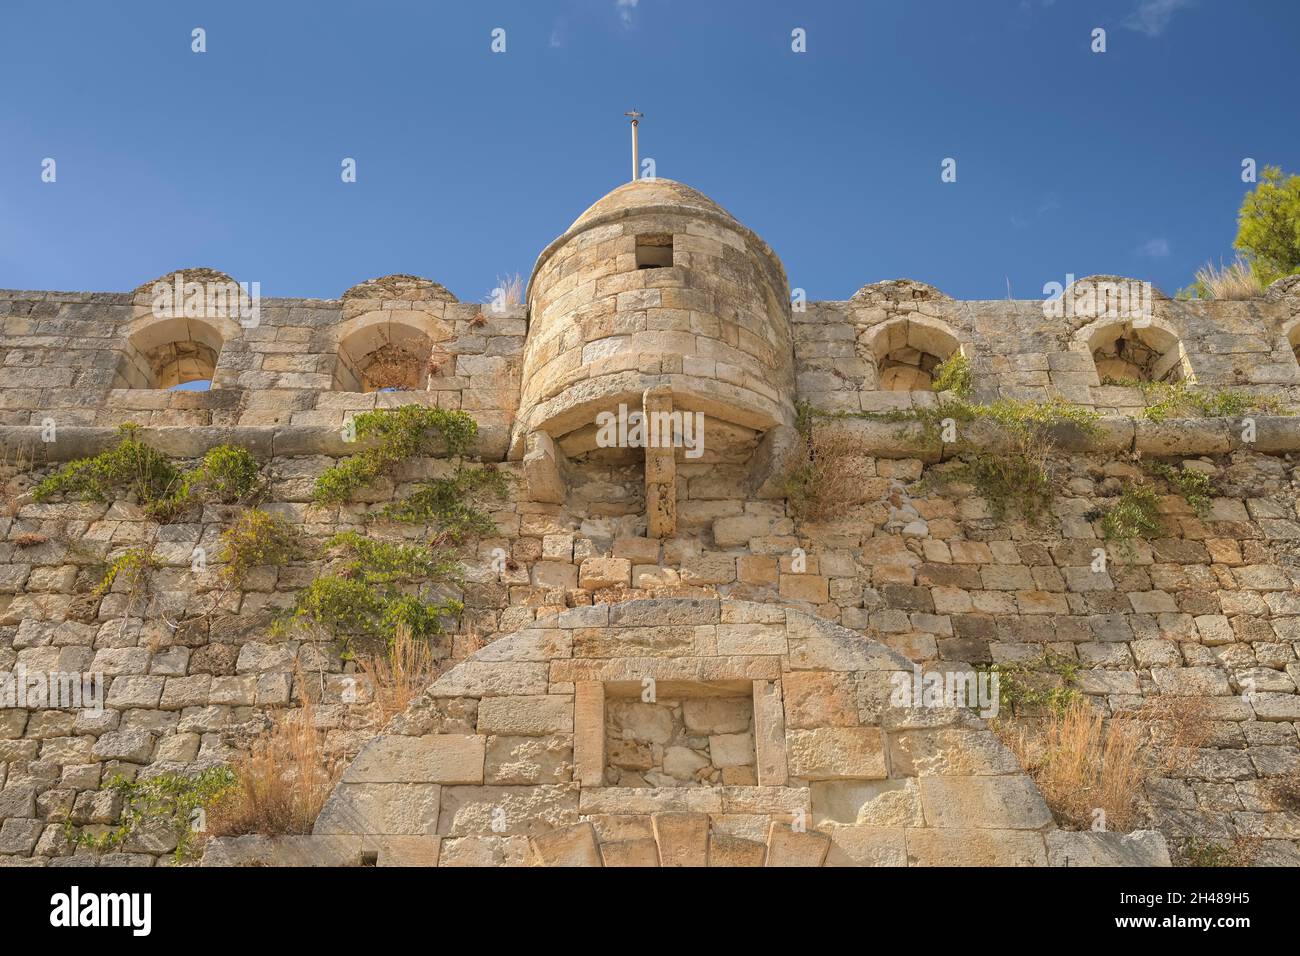 Festungsmauer, Fortezza, Rethymno, Kreta, Griechenland Stock Photo